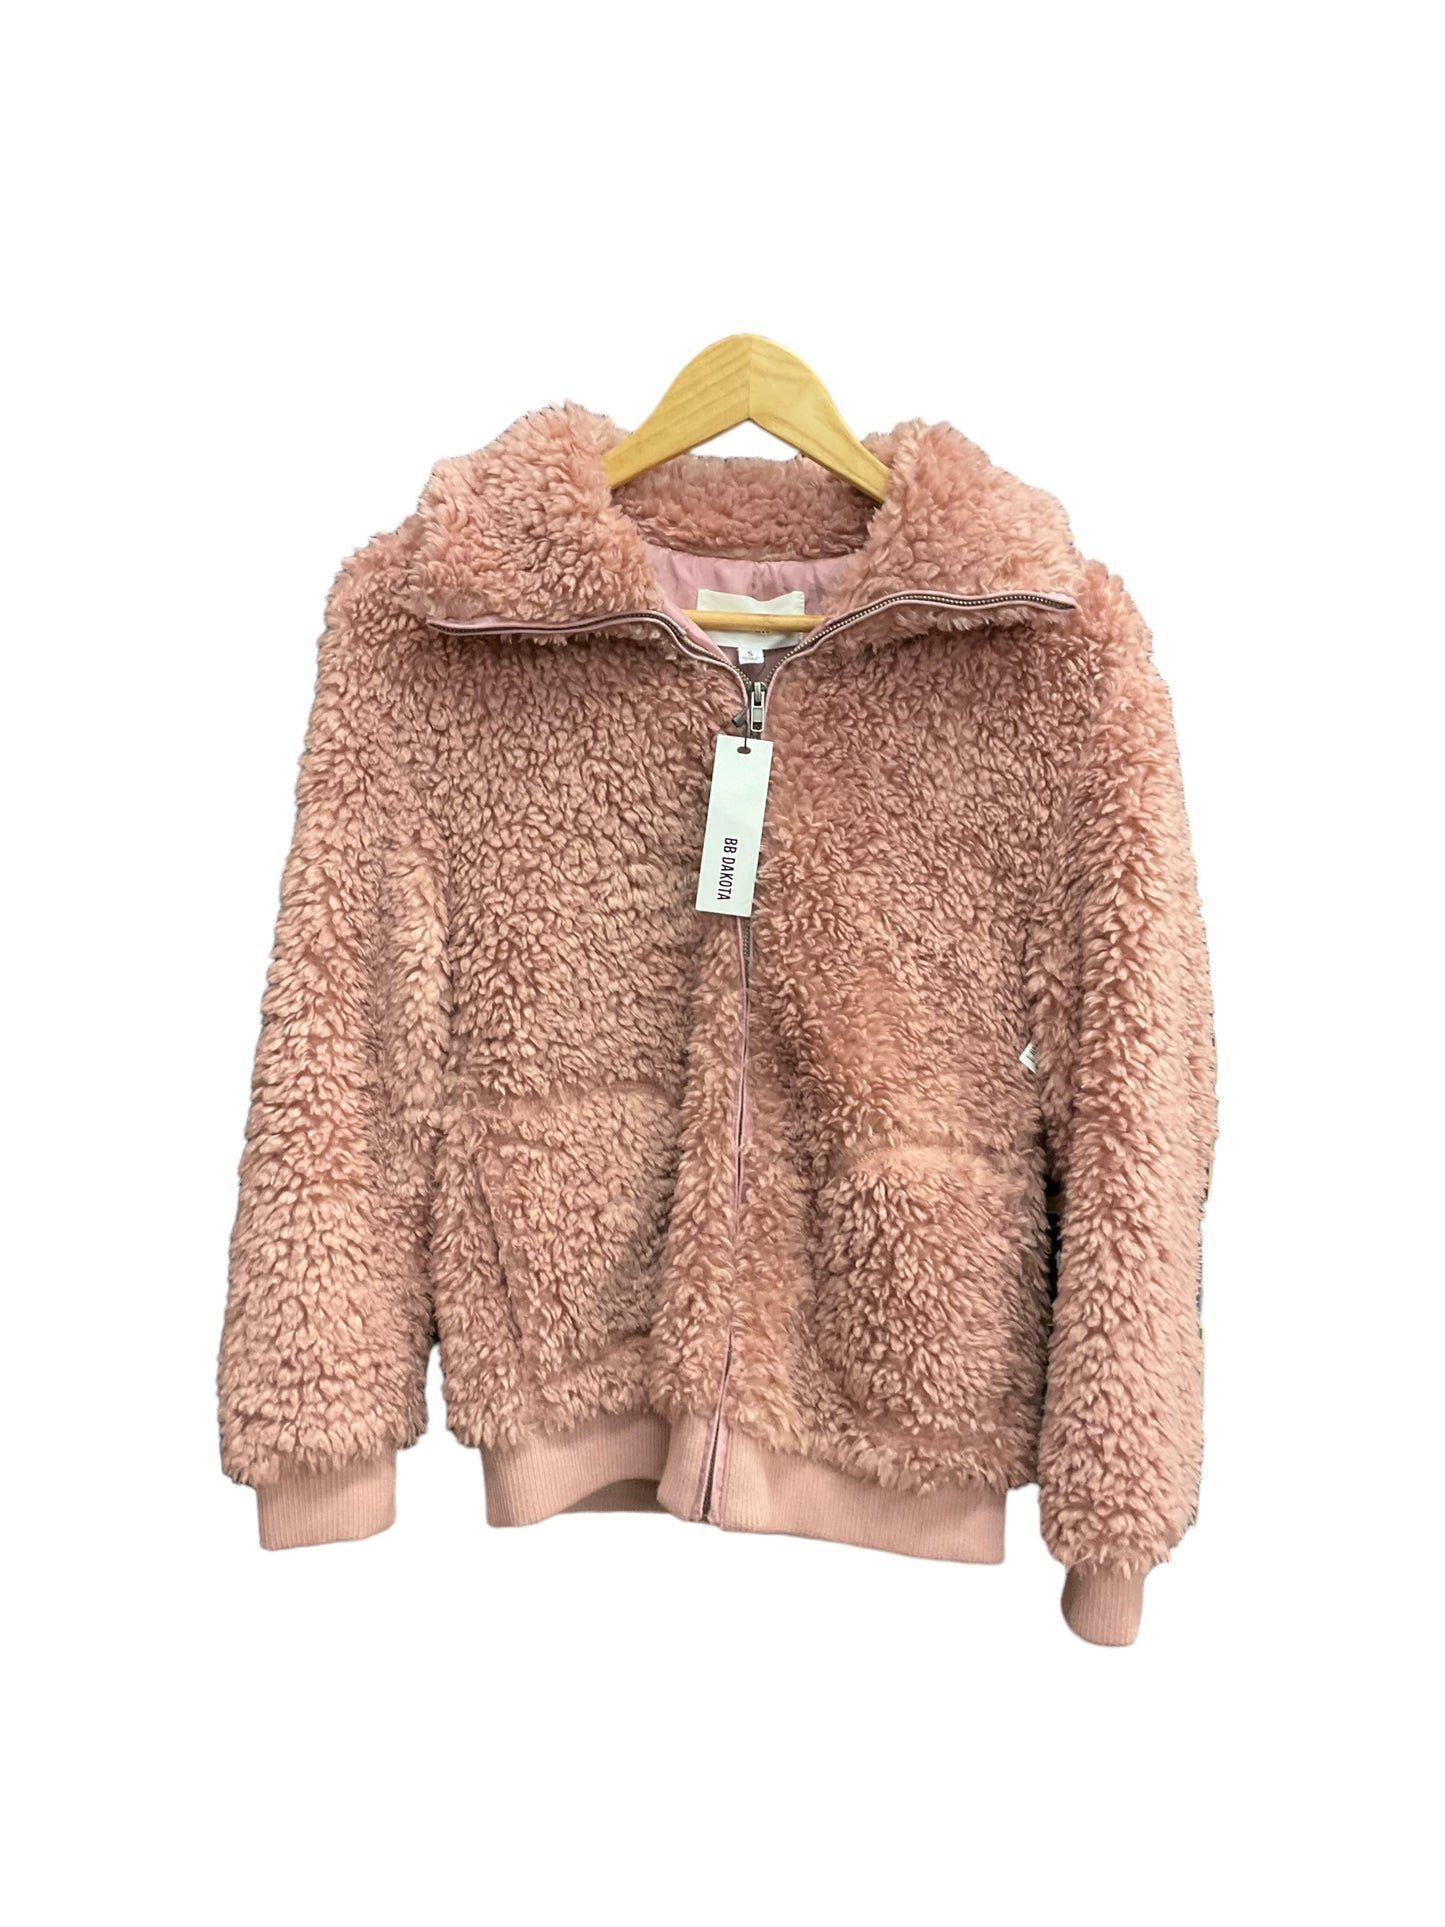 Jacket Faux Fur & Sherpa By Bb Dakota  Size: S